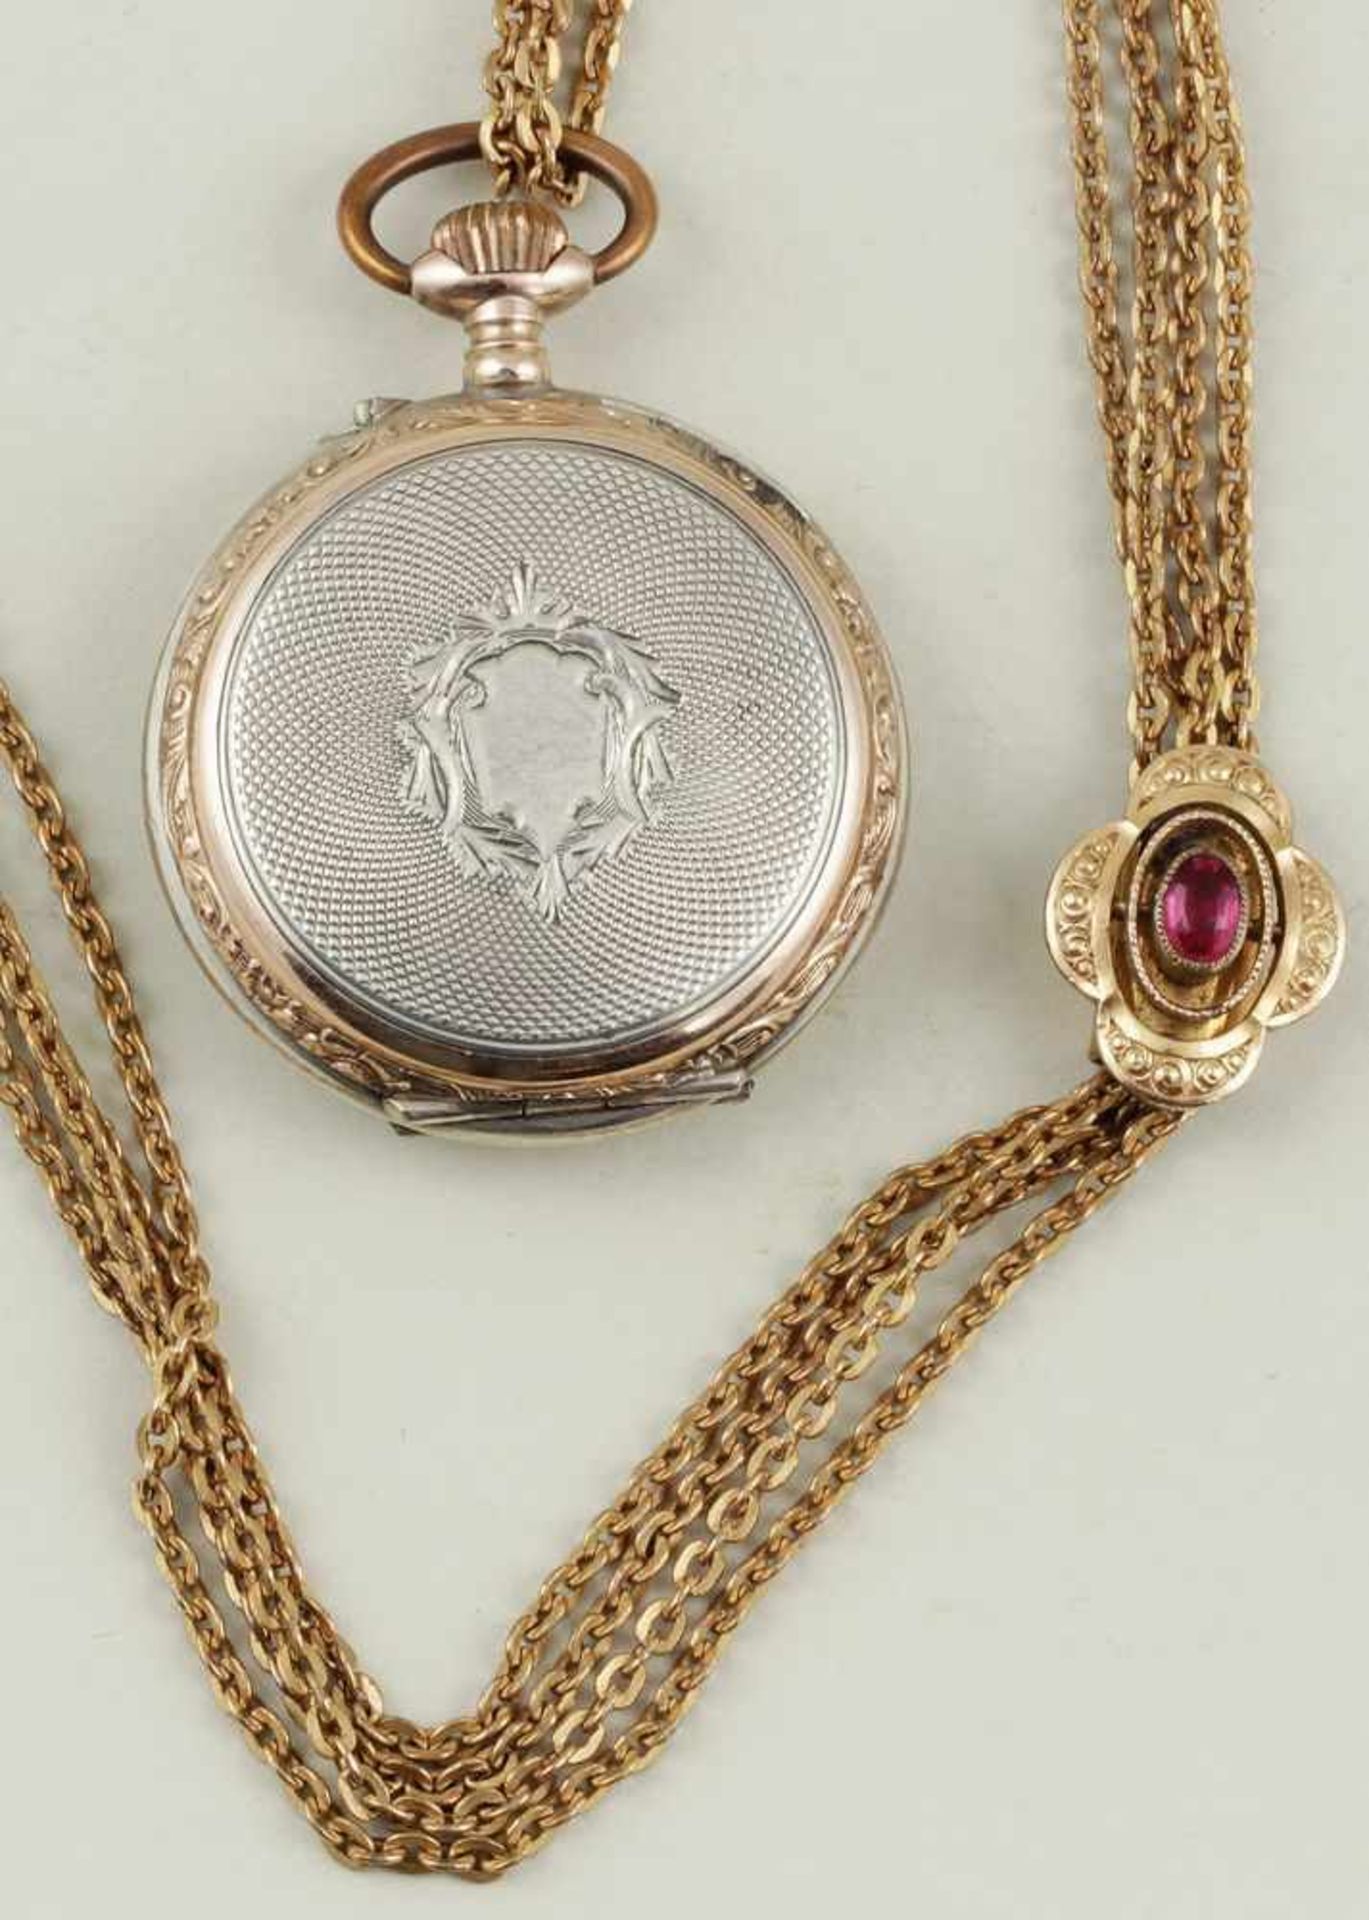 Damentaschenuhr mit Kette.Guillochiertes und ziseliertes 800/000 Silbergehäuse, teils vergoldet. - Bild 2 aus 2